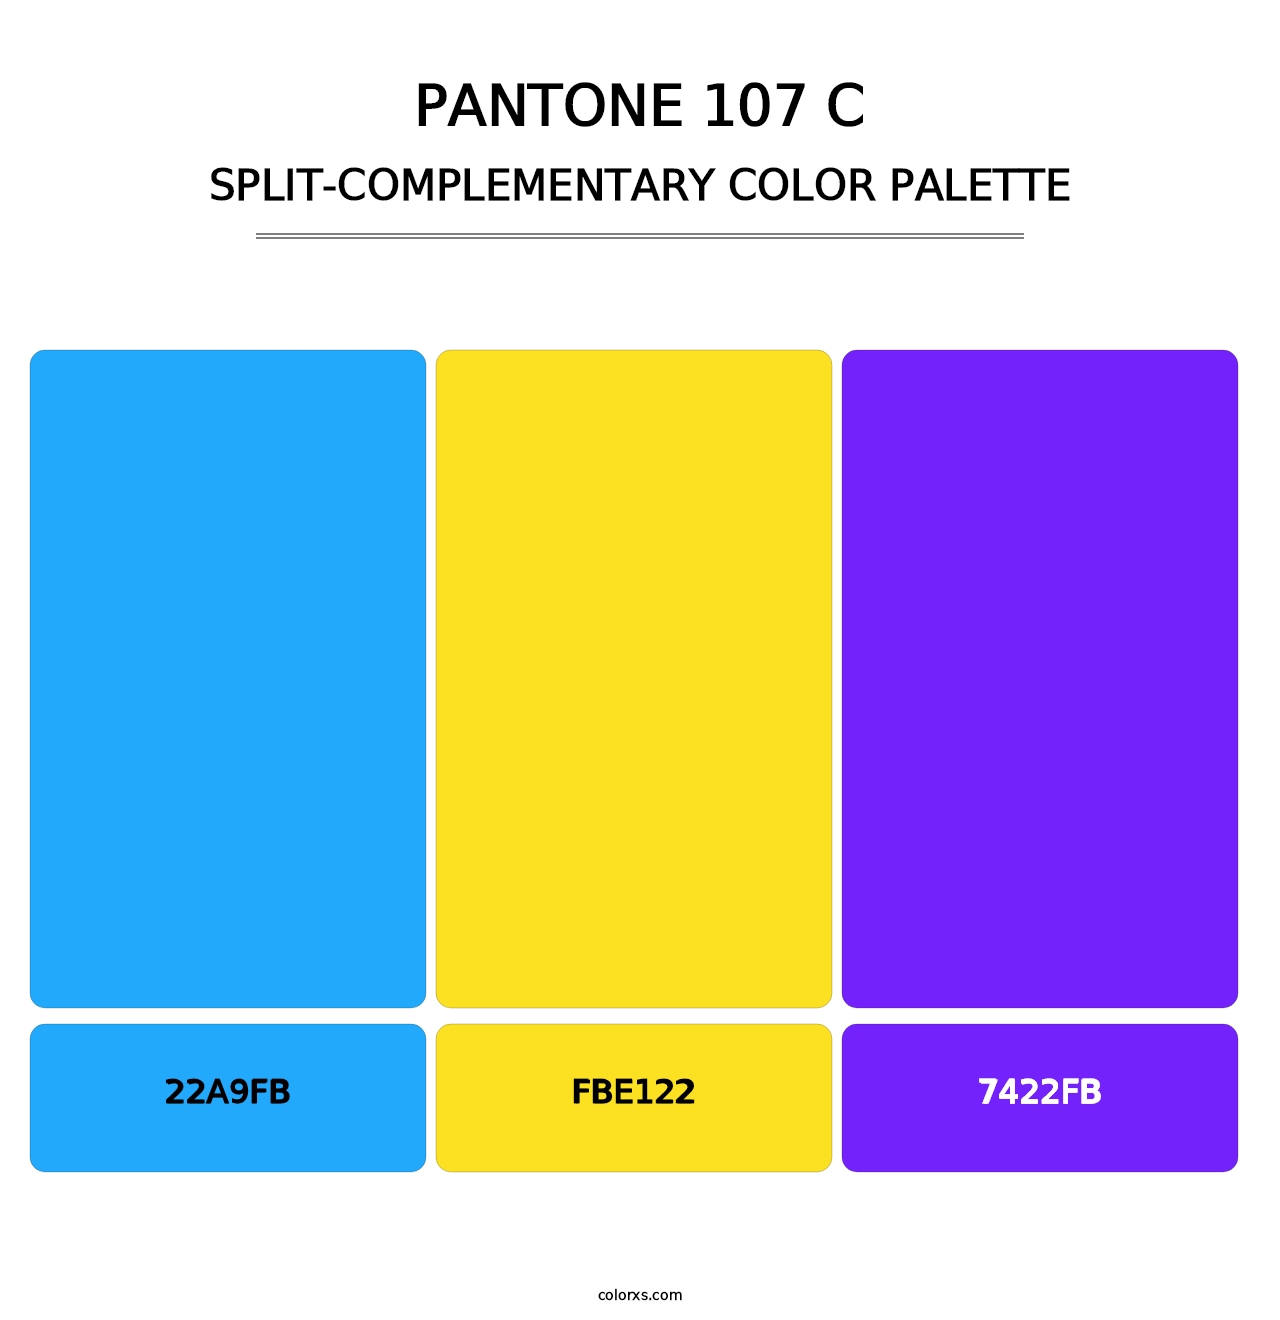 PANTONE 107 C - Split-Complementary Color Palette